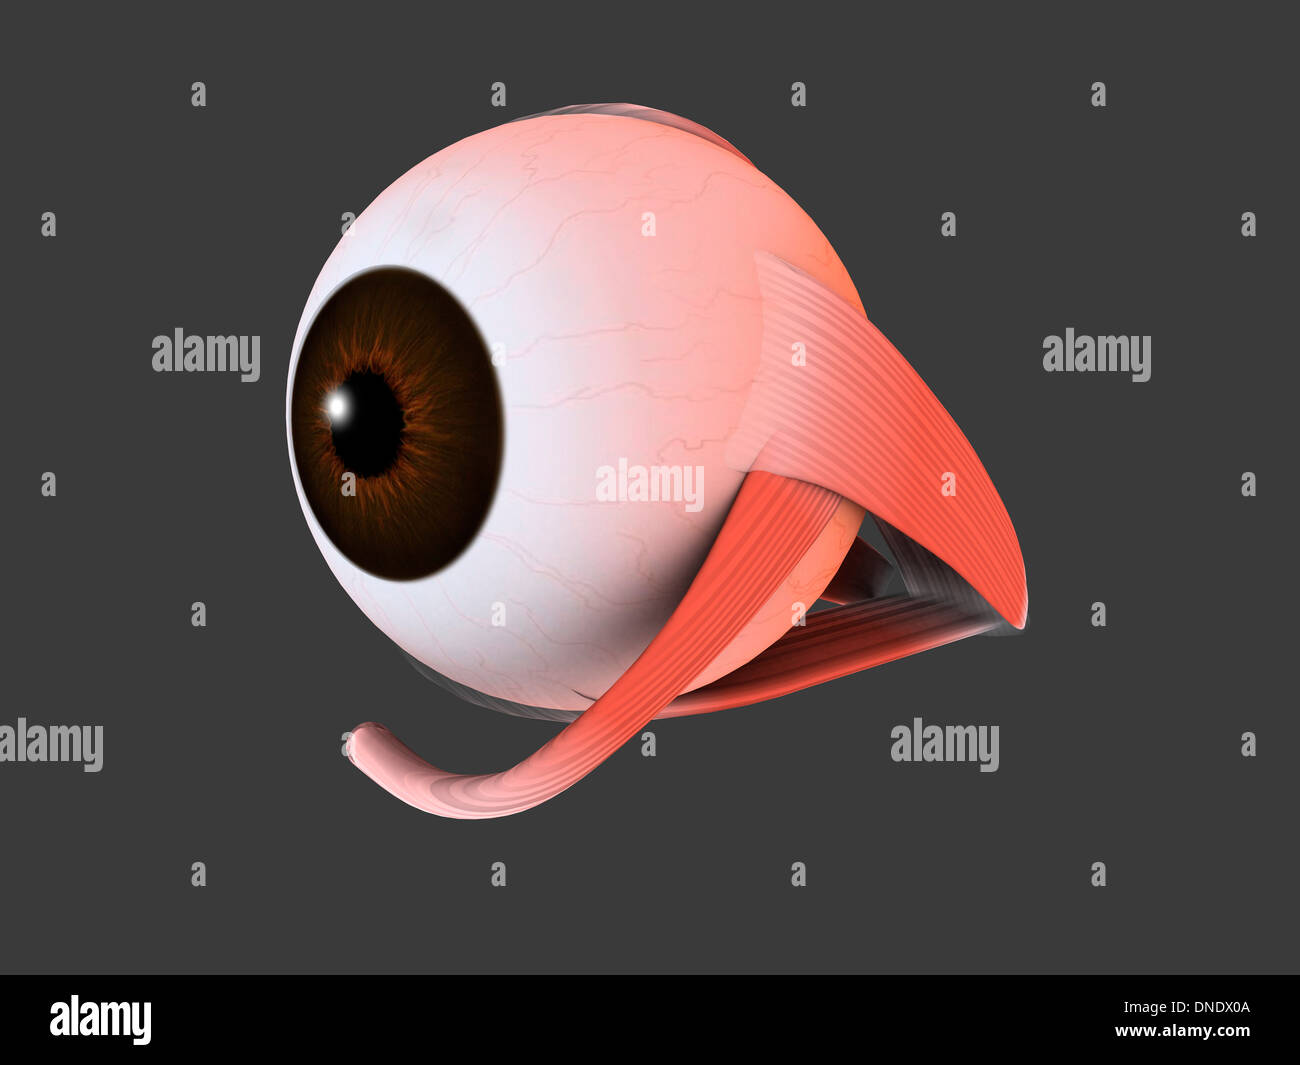 Conceptual image of human eye anatomy. Stock Photo